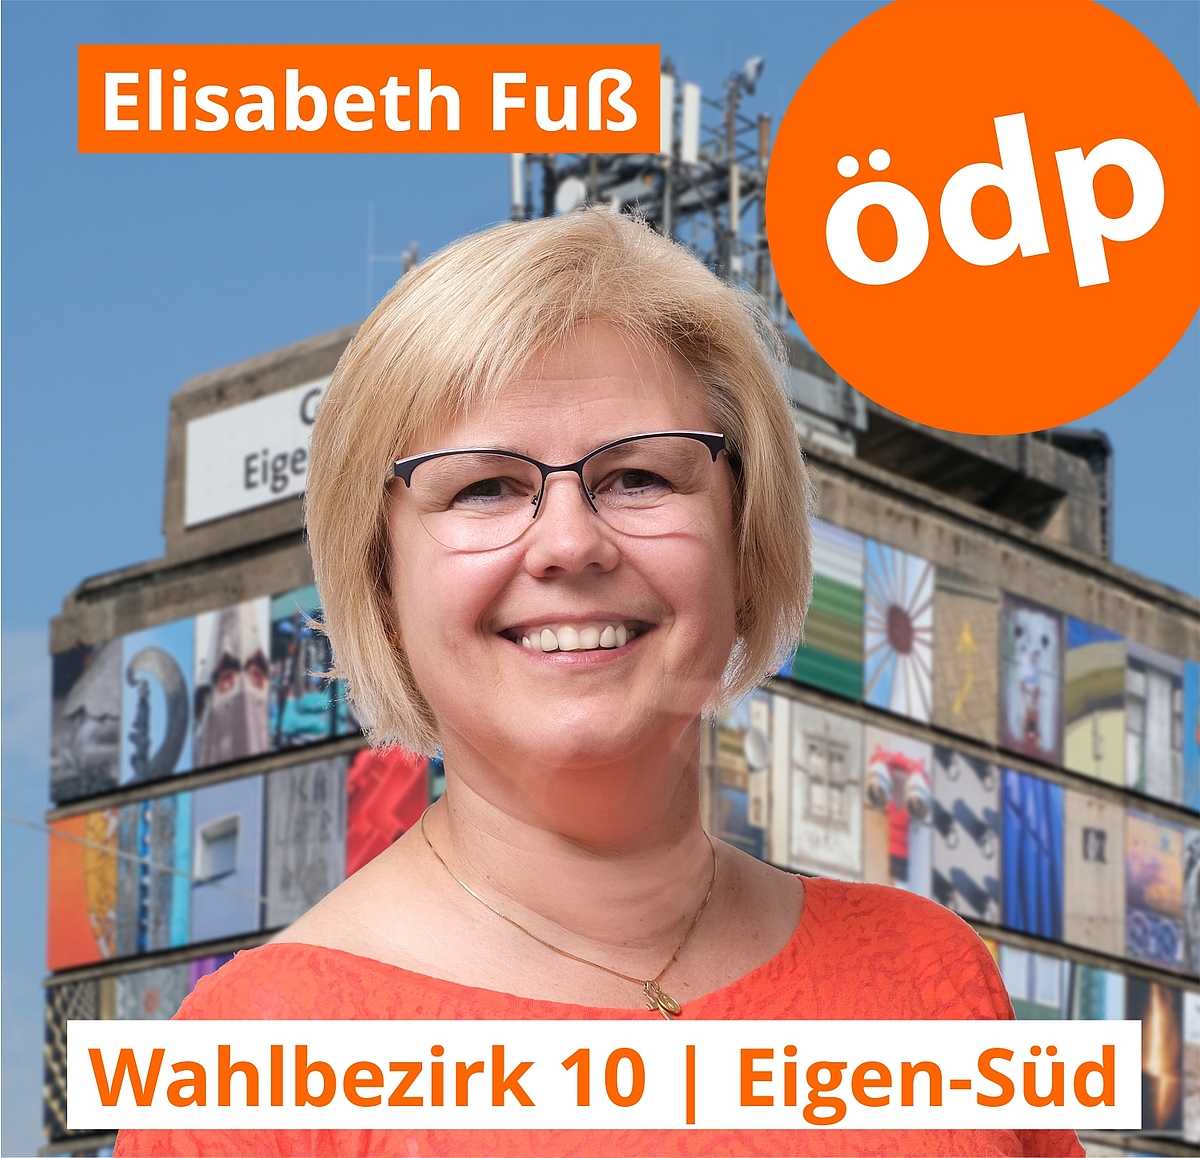 Elisabeth Fuß | Wahlbezirk 10 | Eigen-Süd